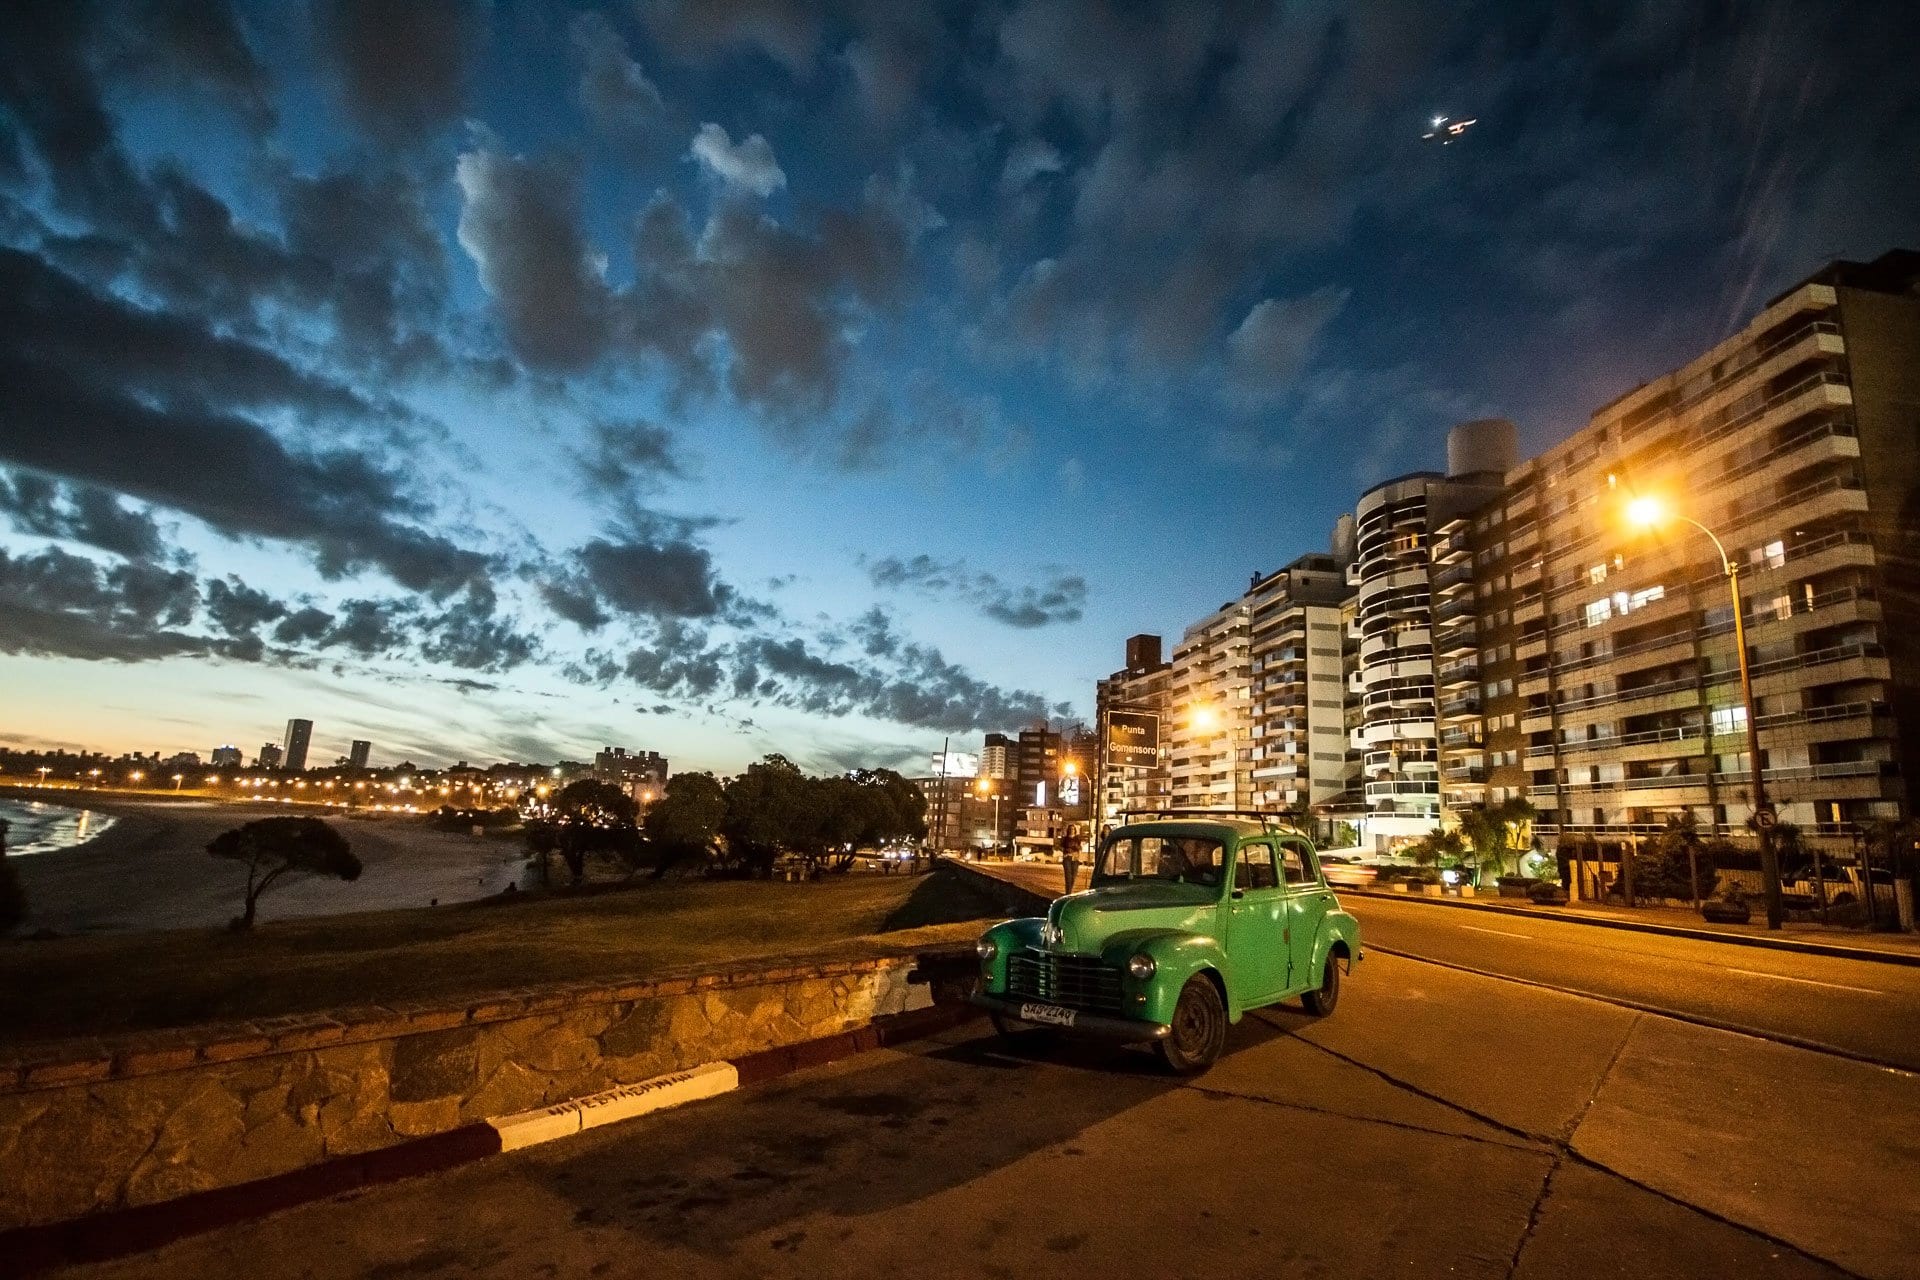 Montevidéu: Conhecendo a capital uruguaia